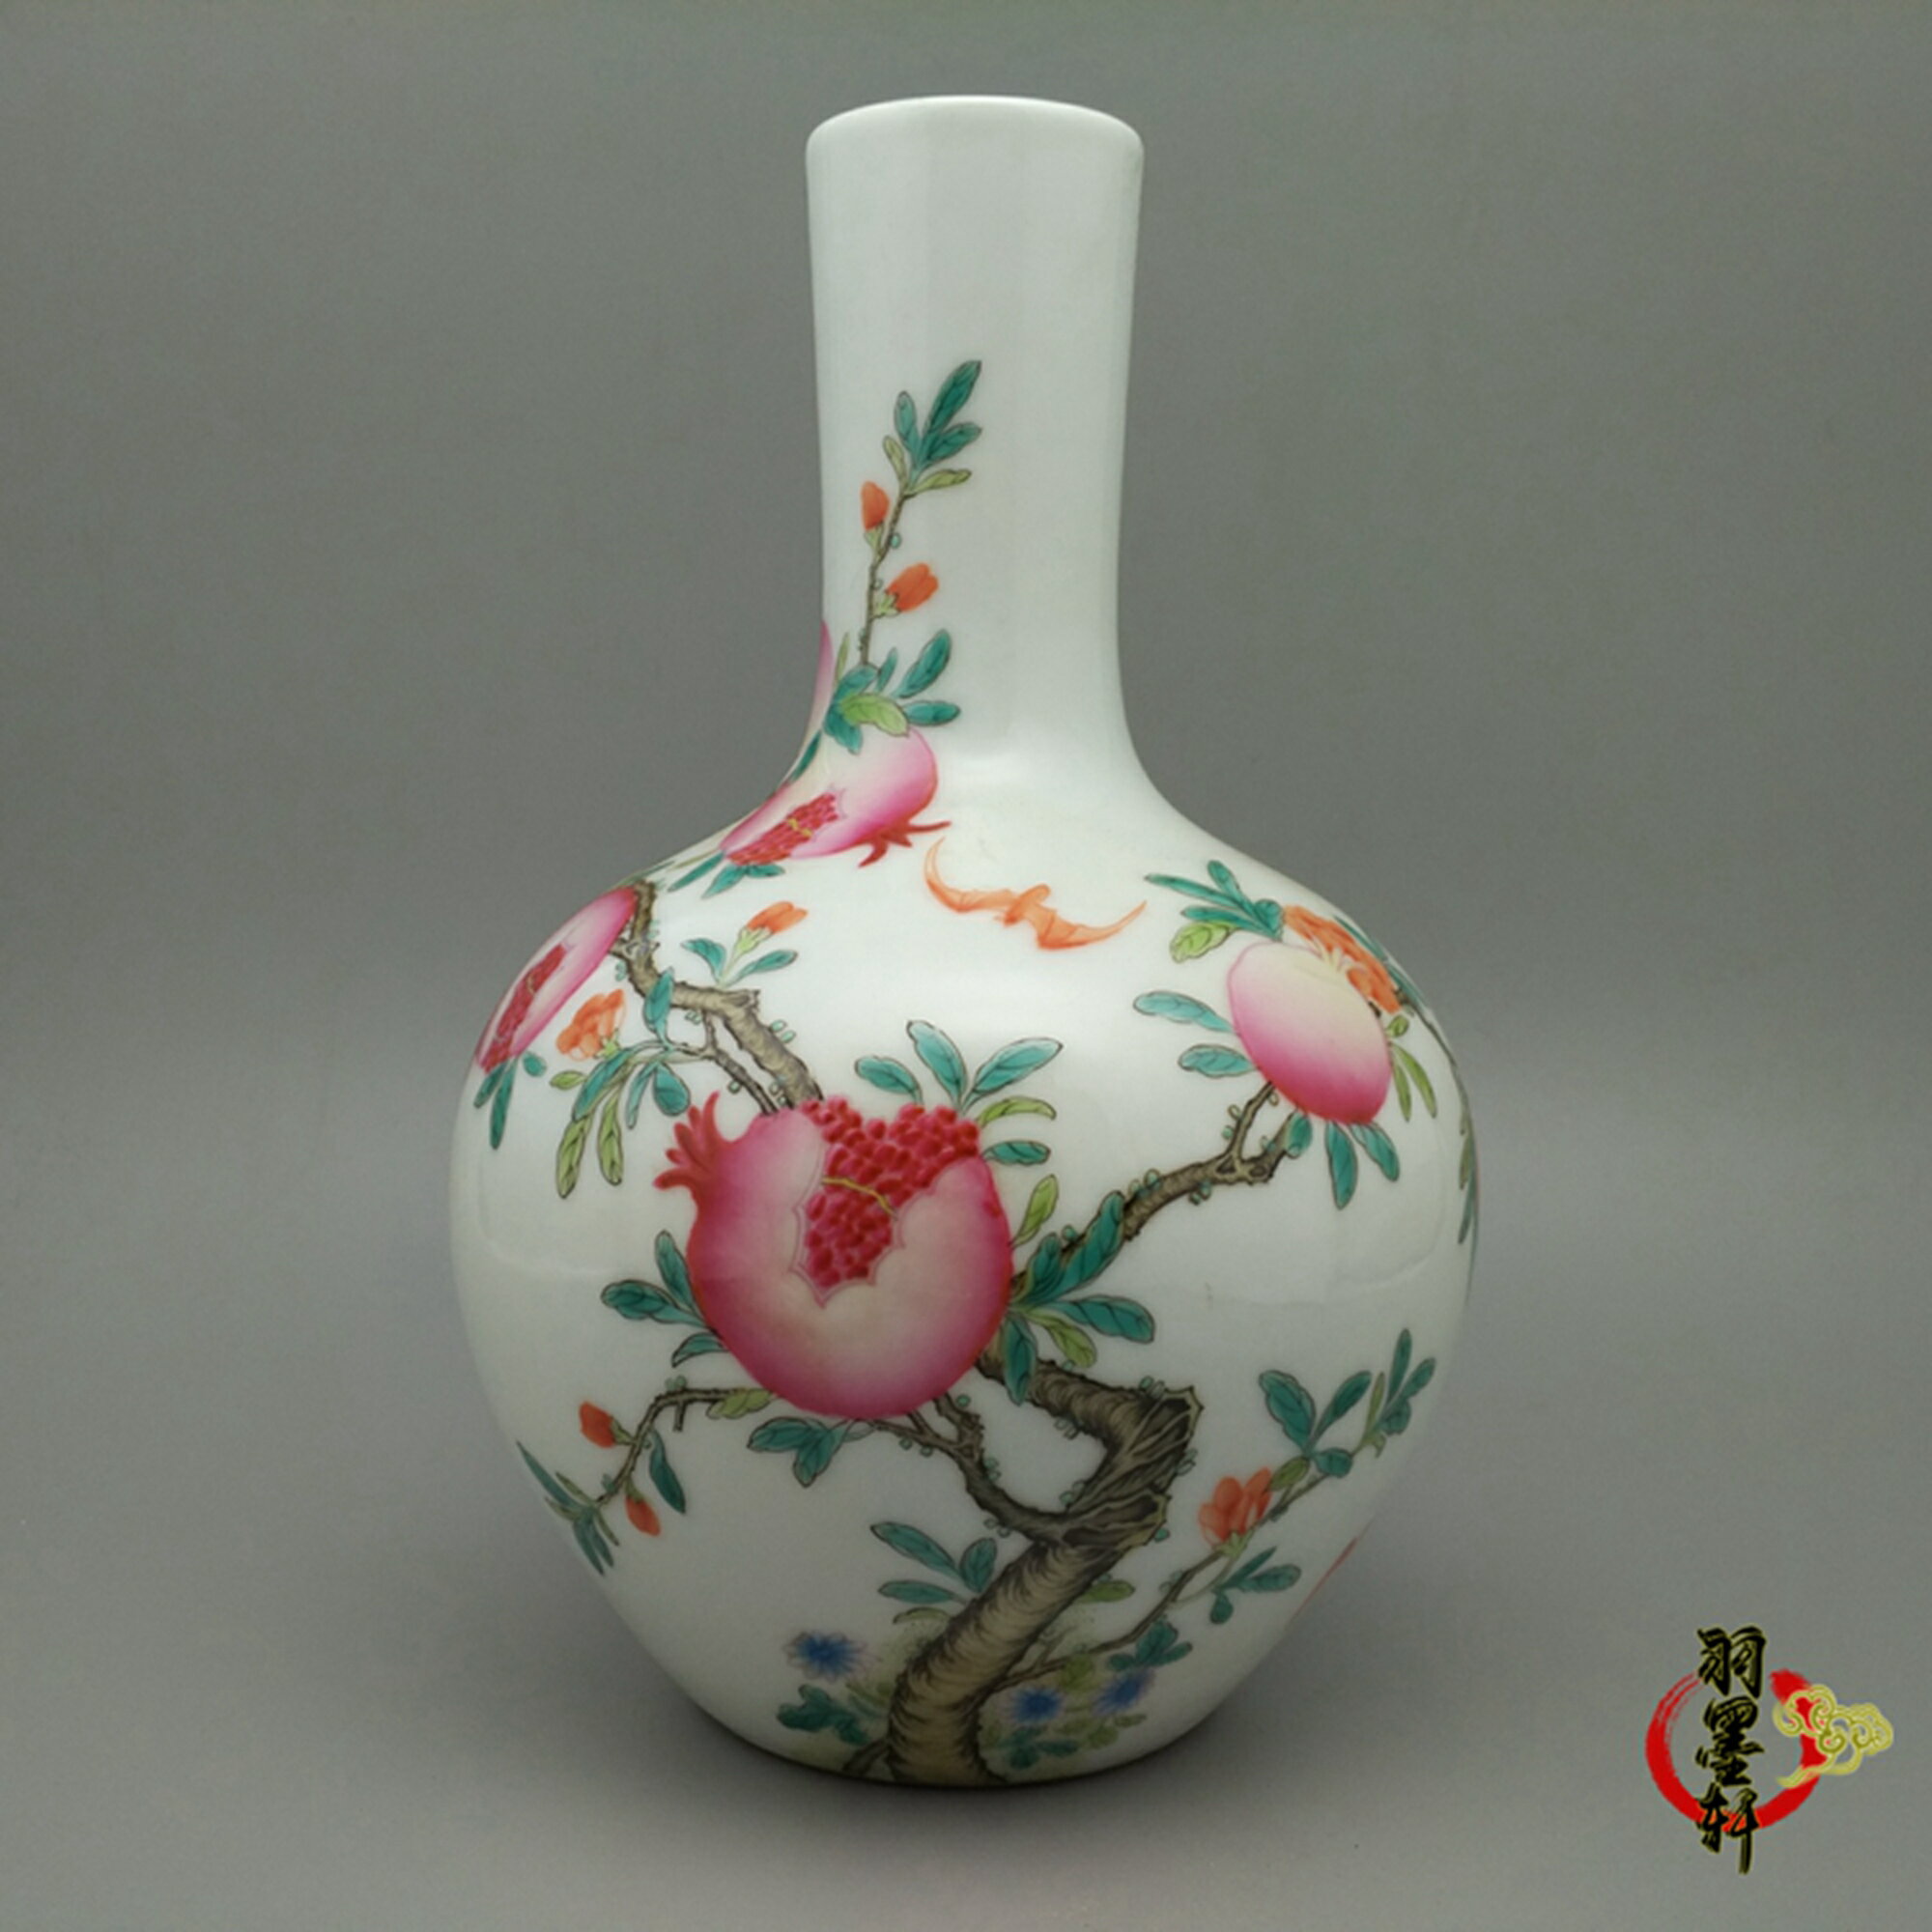 清乾隆 粉彩花鳥 天球瓶 花瓶 古玩古董陶瓷器 手繪精品仿古收藏